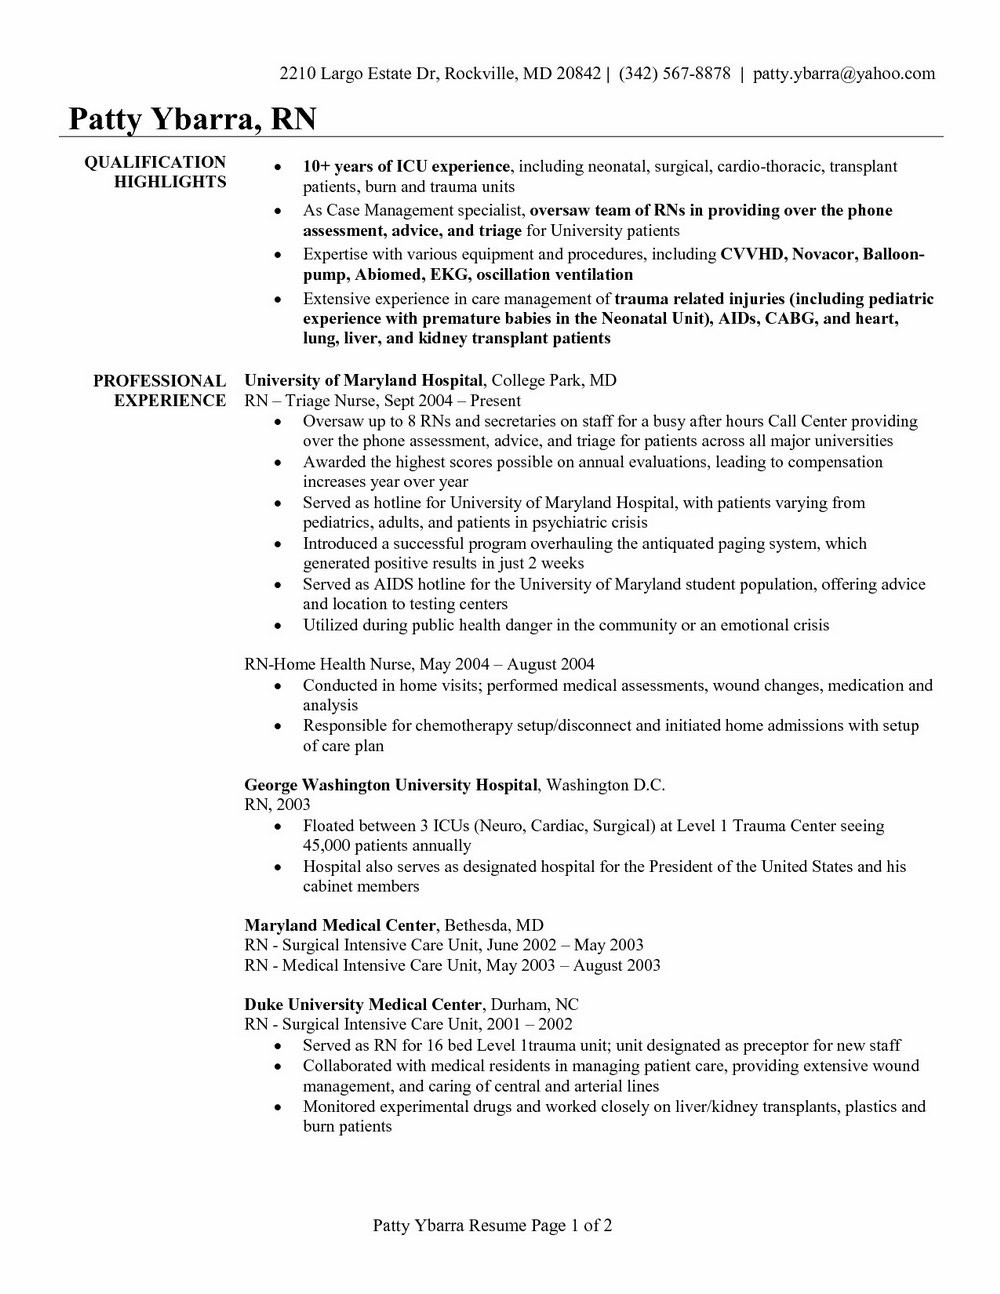 registered nurse resume template australia